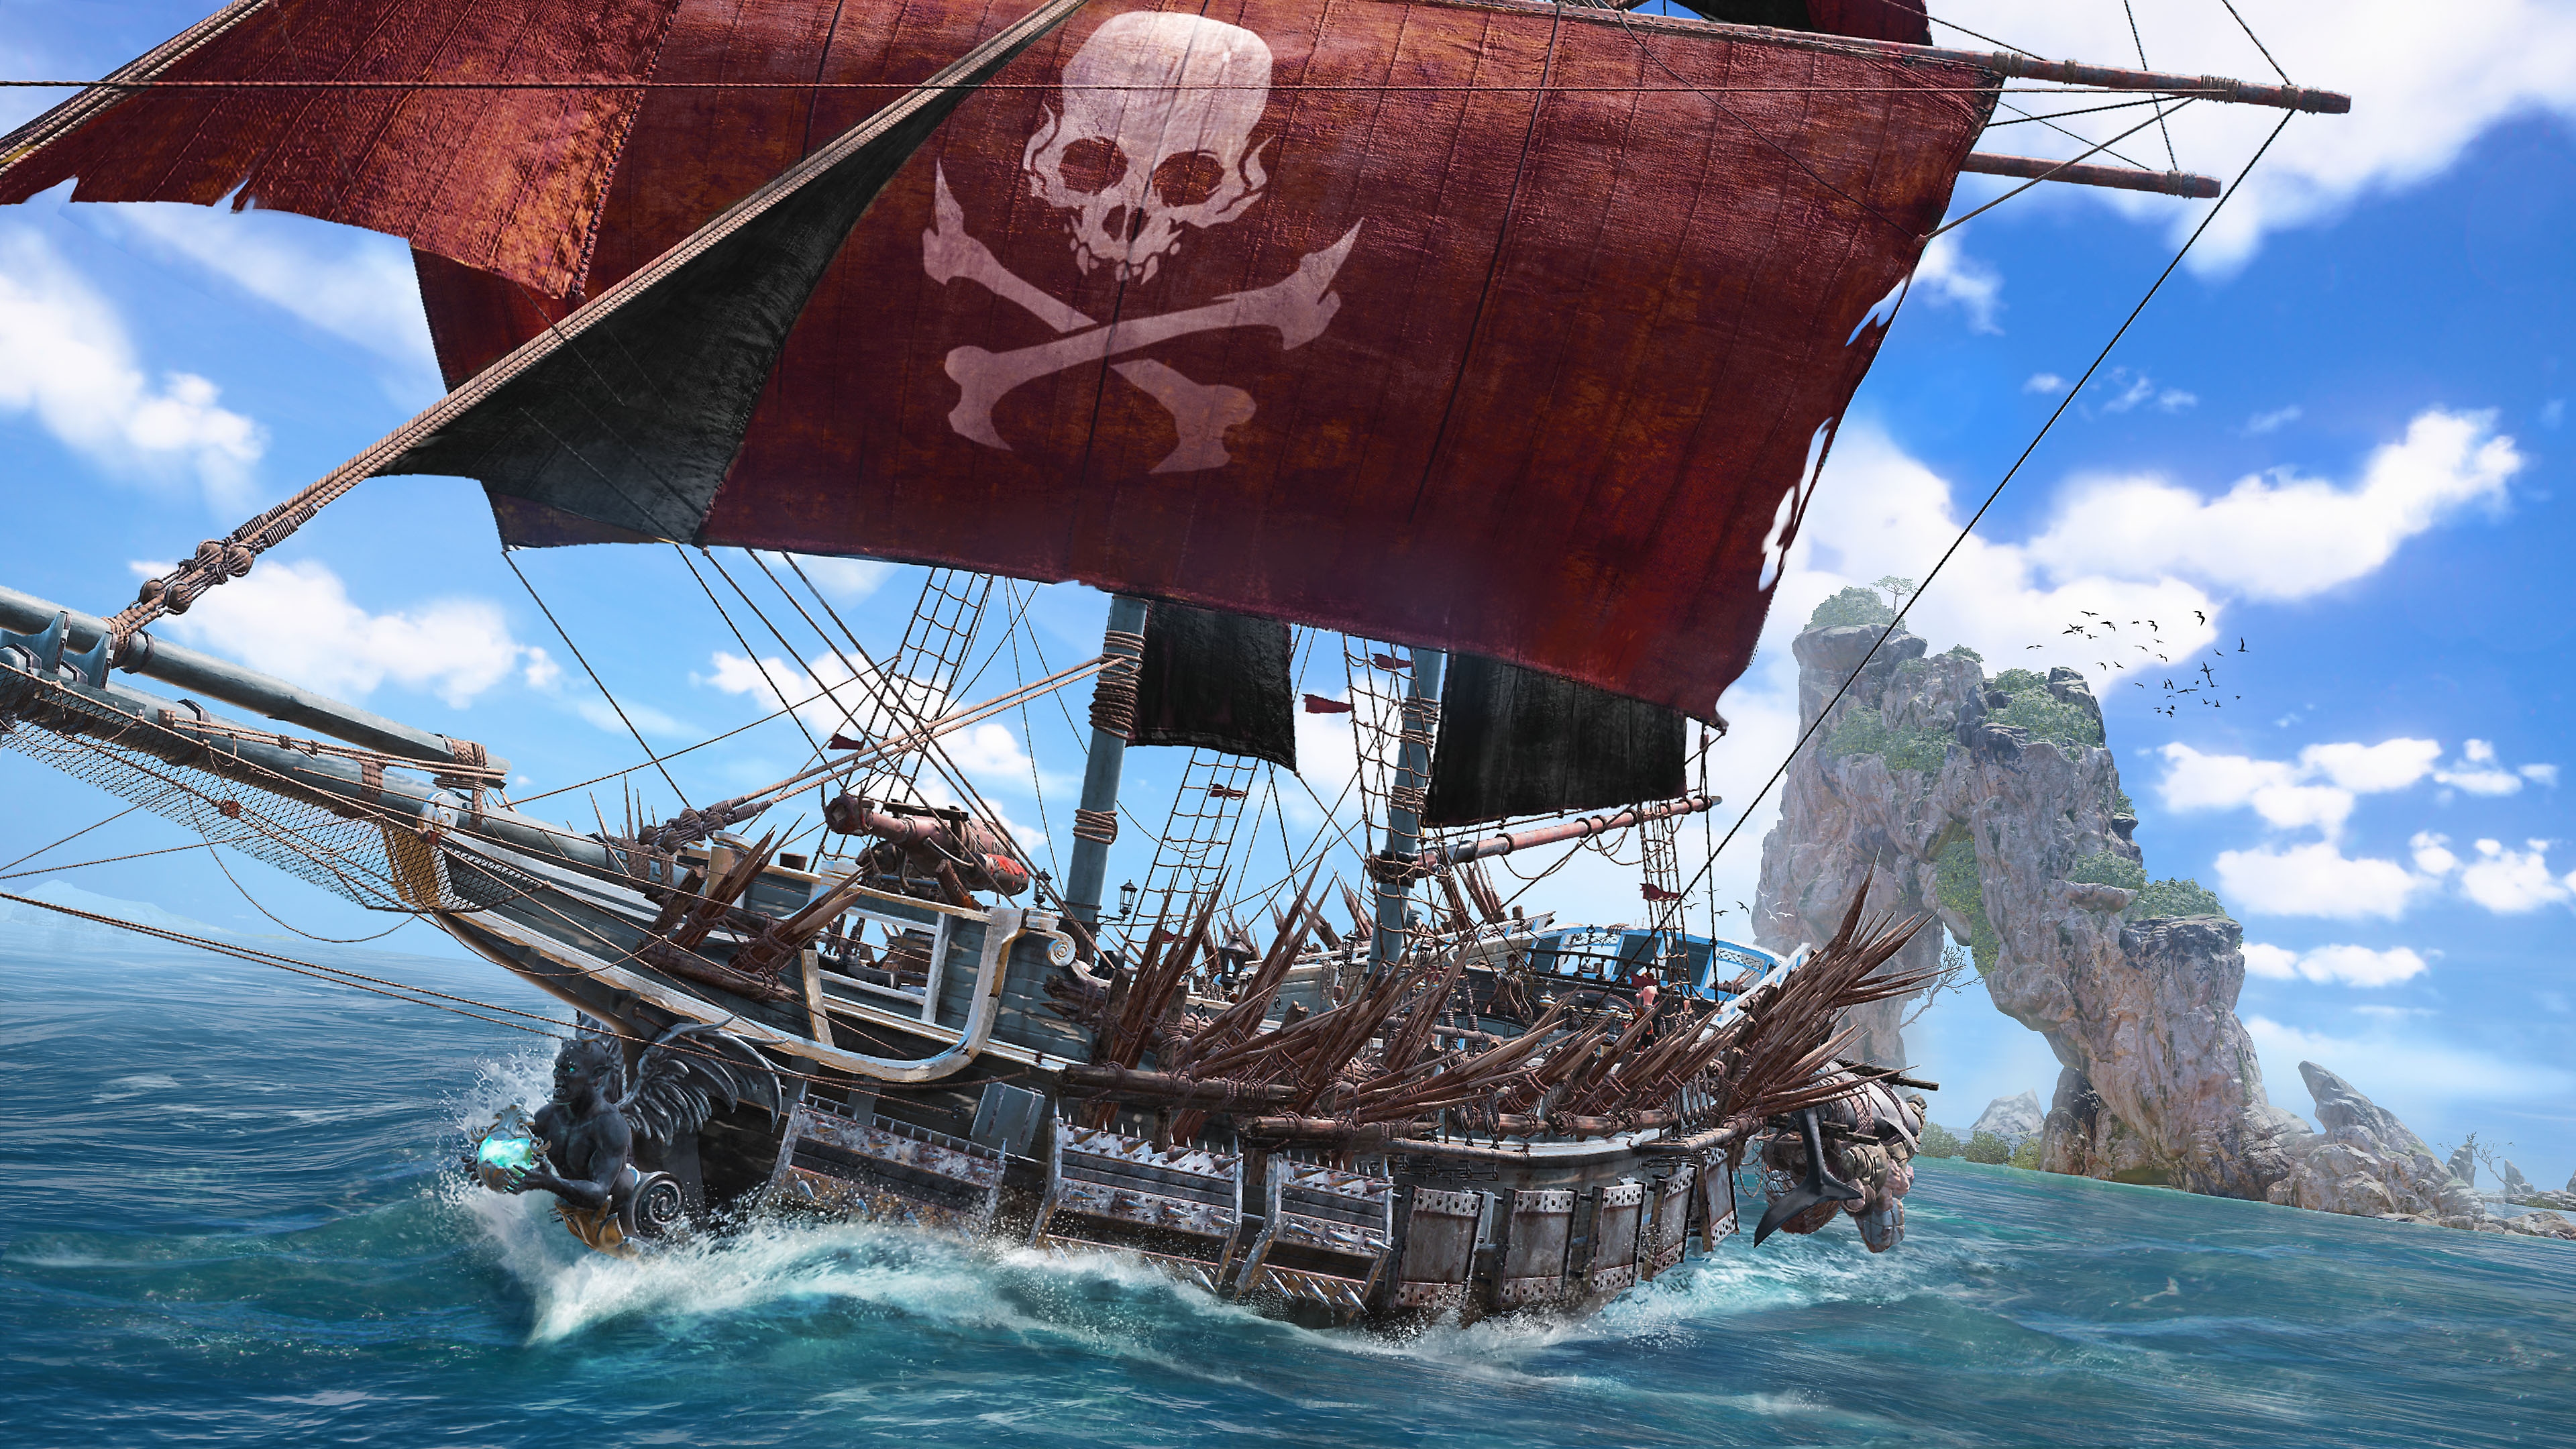 Skull & Bones – snímek ze hry zobrazující pirátskou loď s lebkou a zkříženými hnáty na červené hlavní plachtě